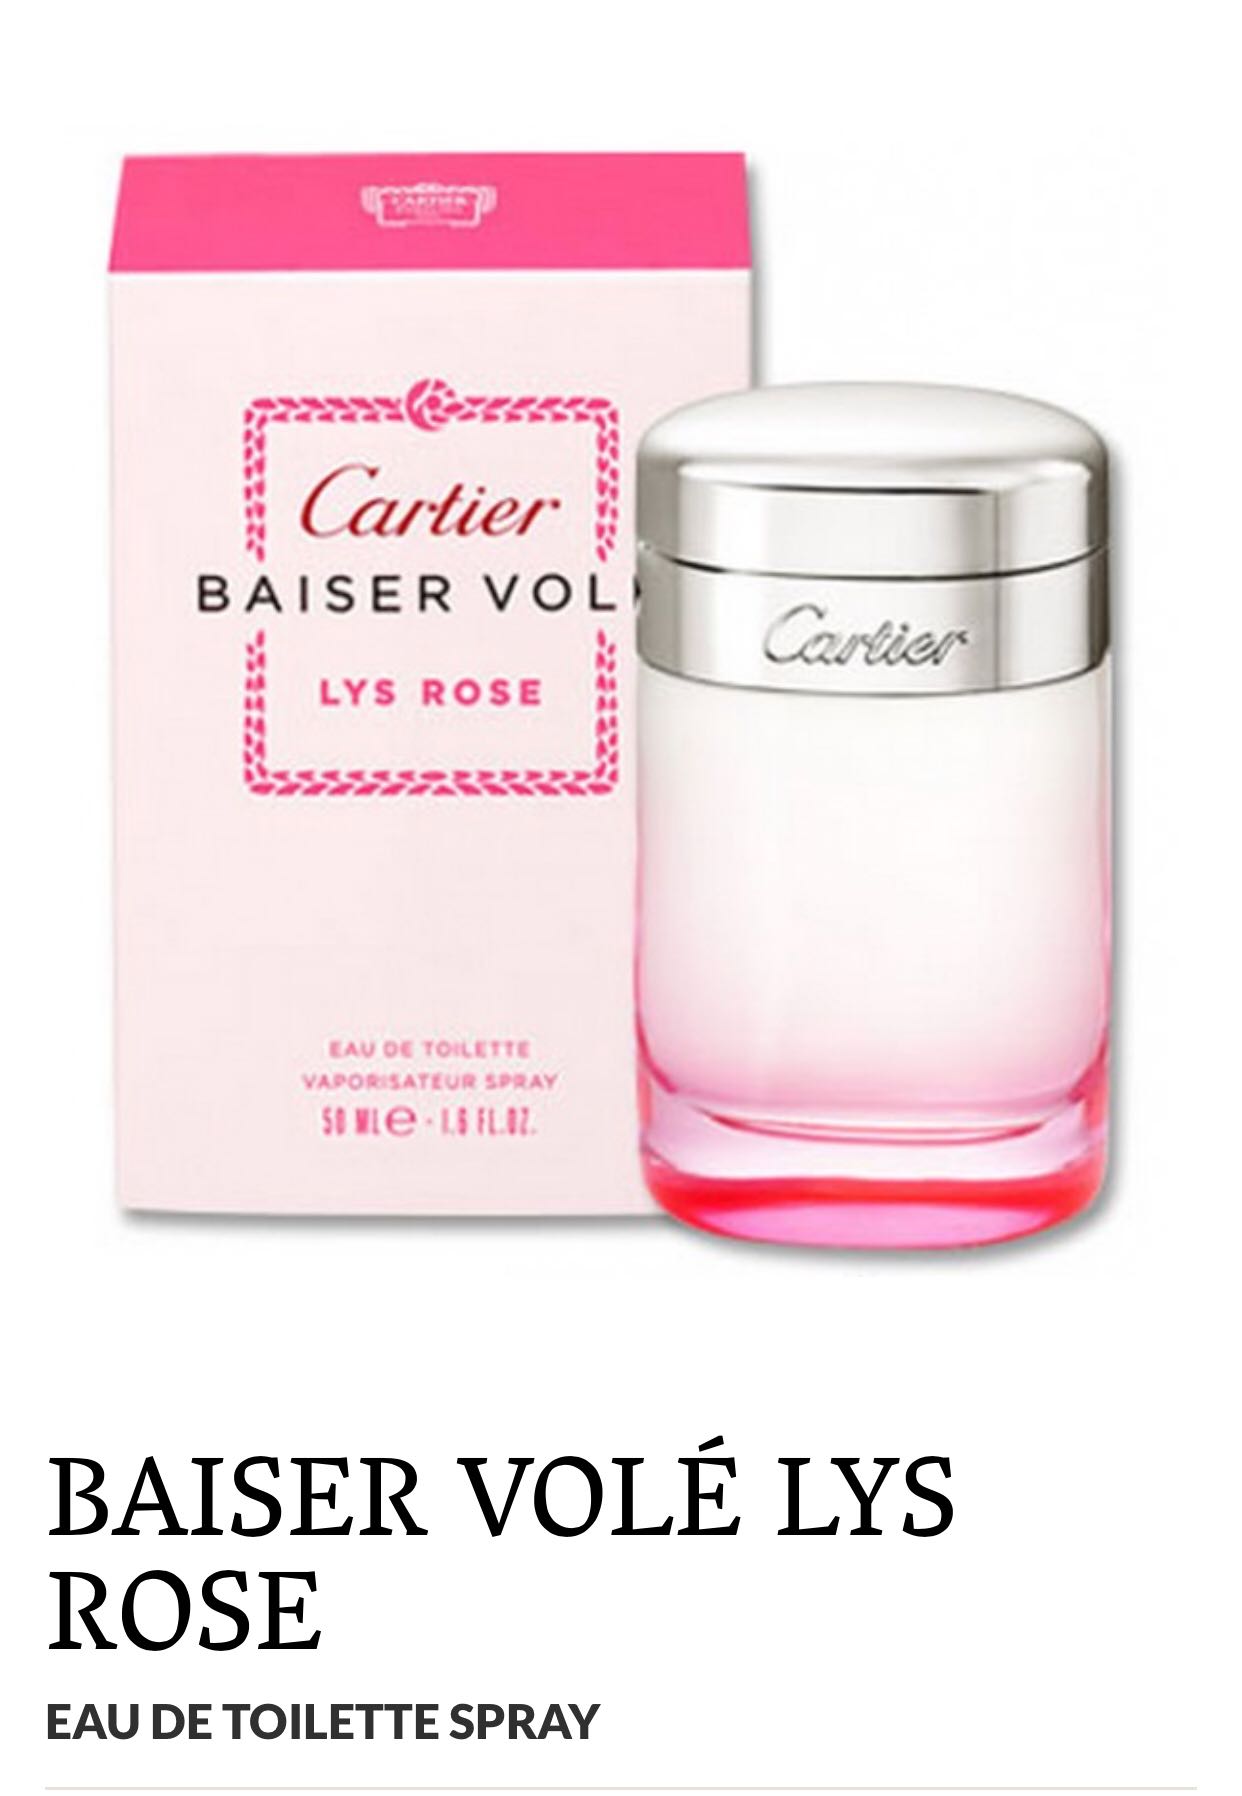 Cartier Baiser Vole Lys Rose Factory Sale, SAVE 42